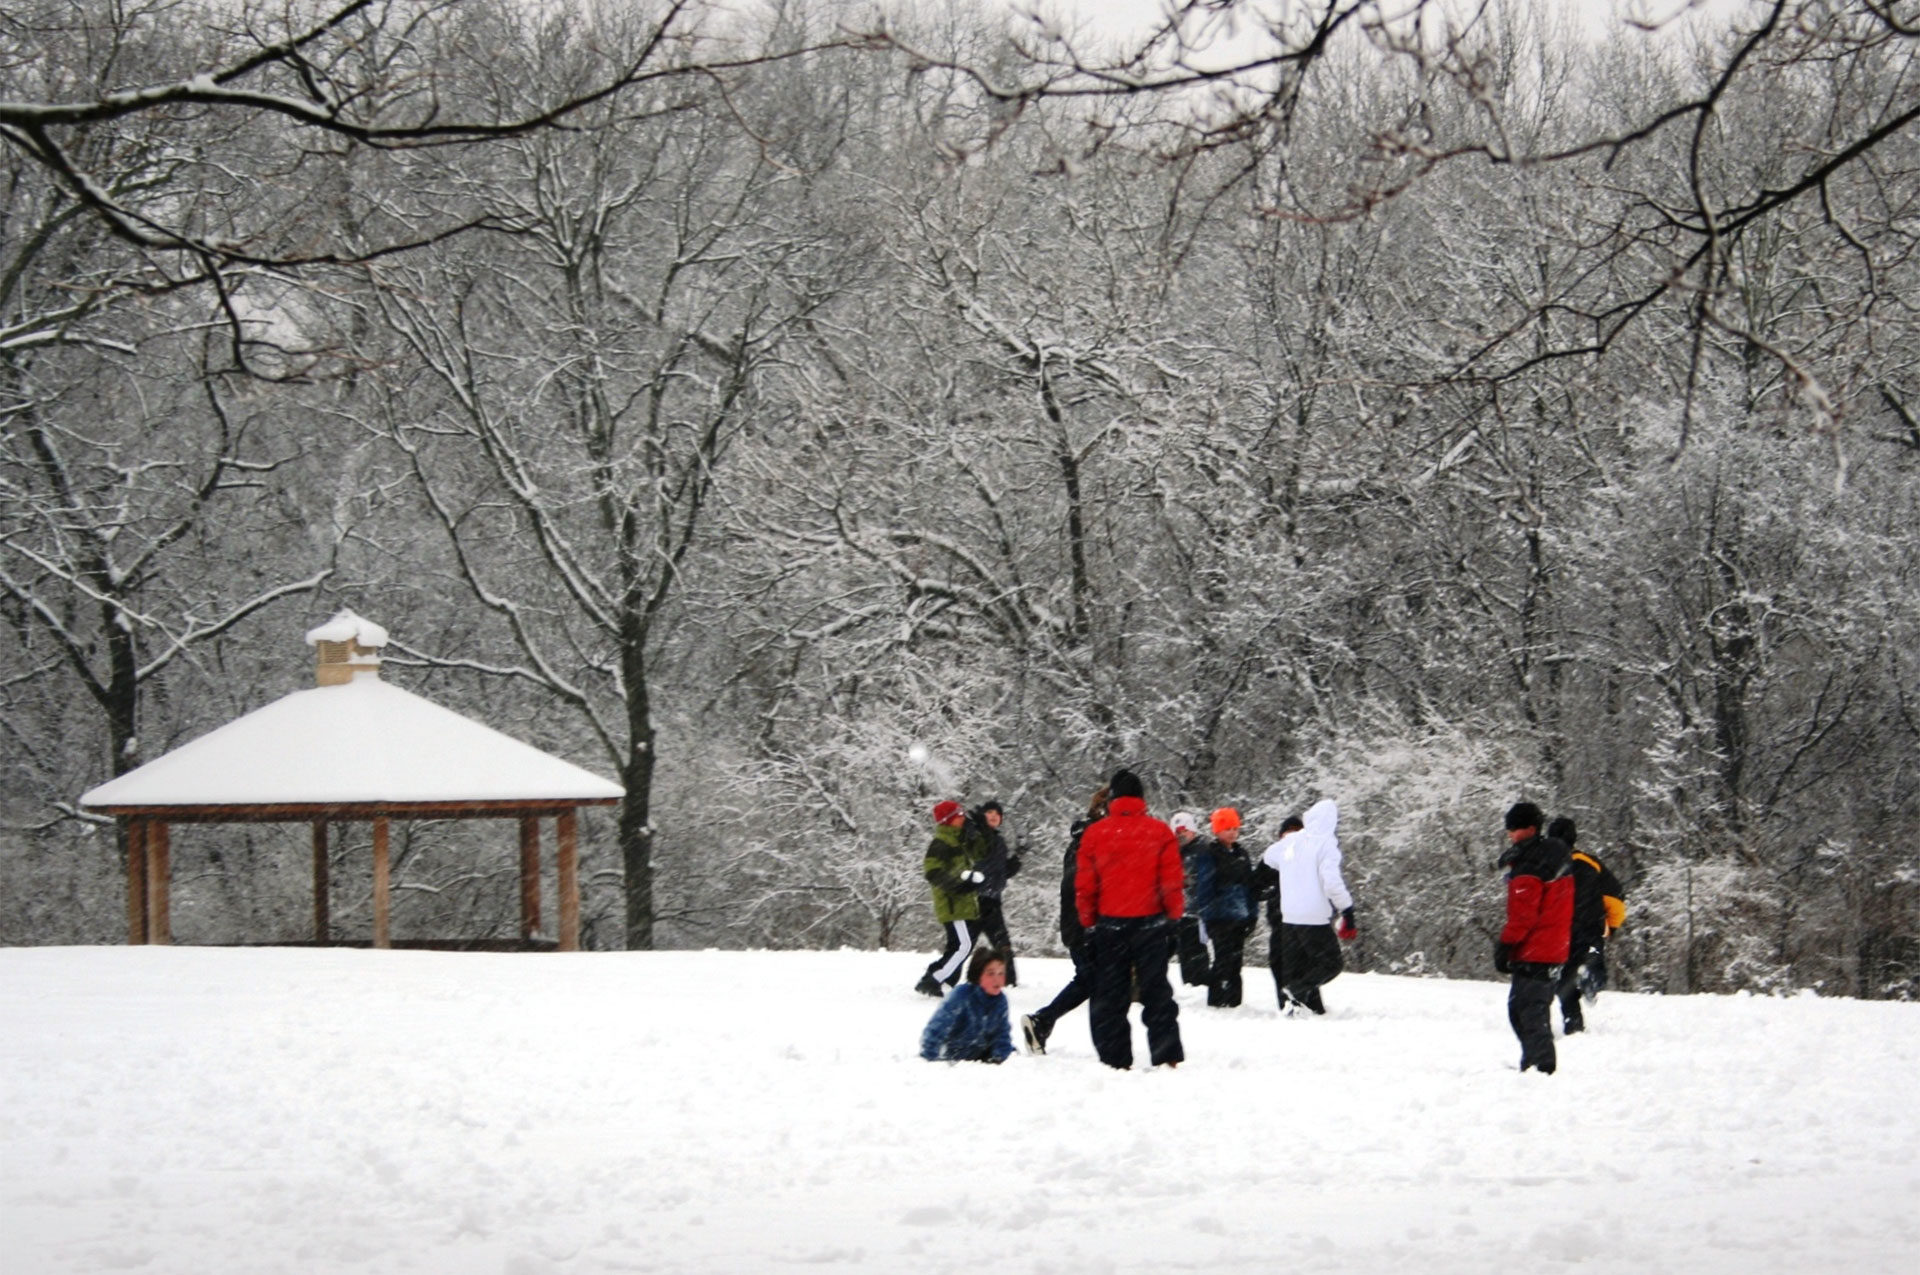 Miller Park in Winter